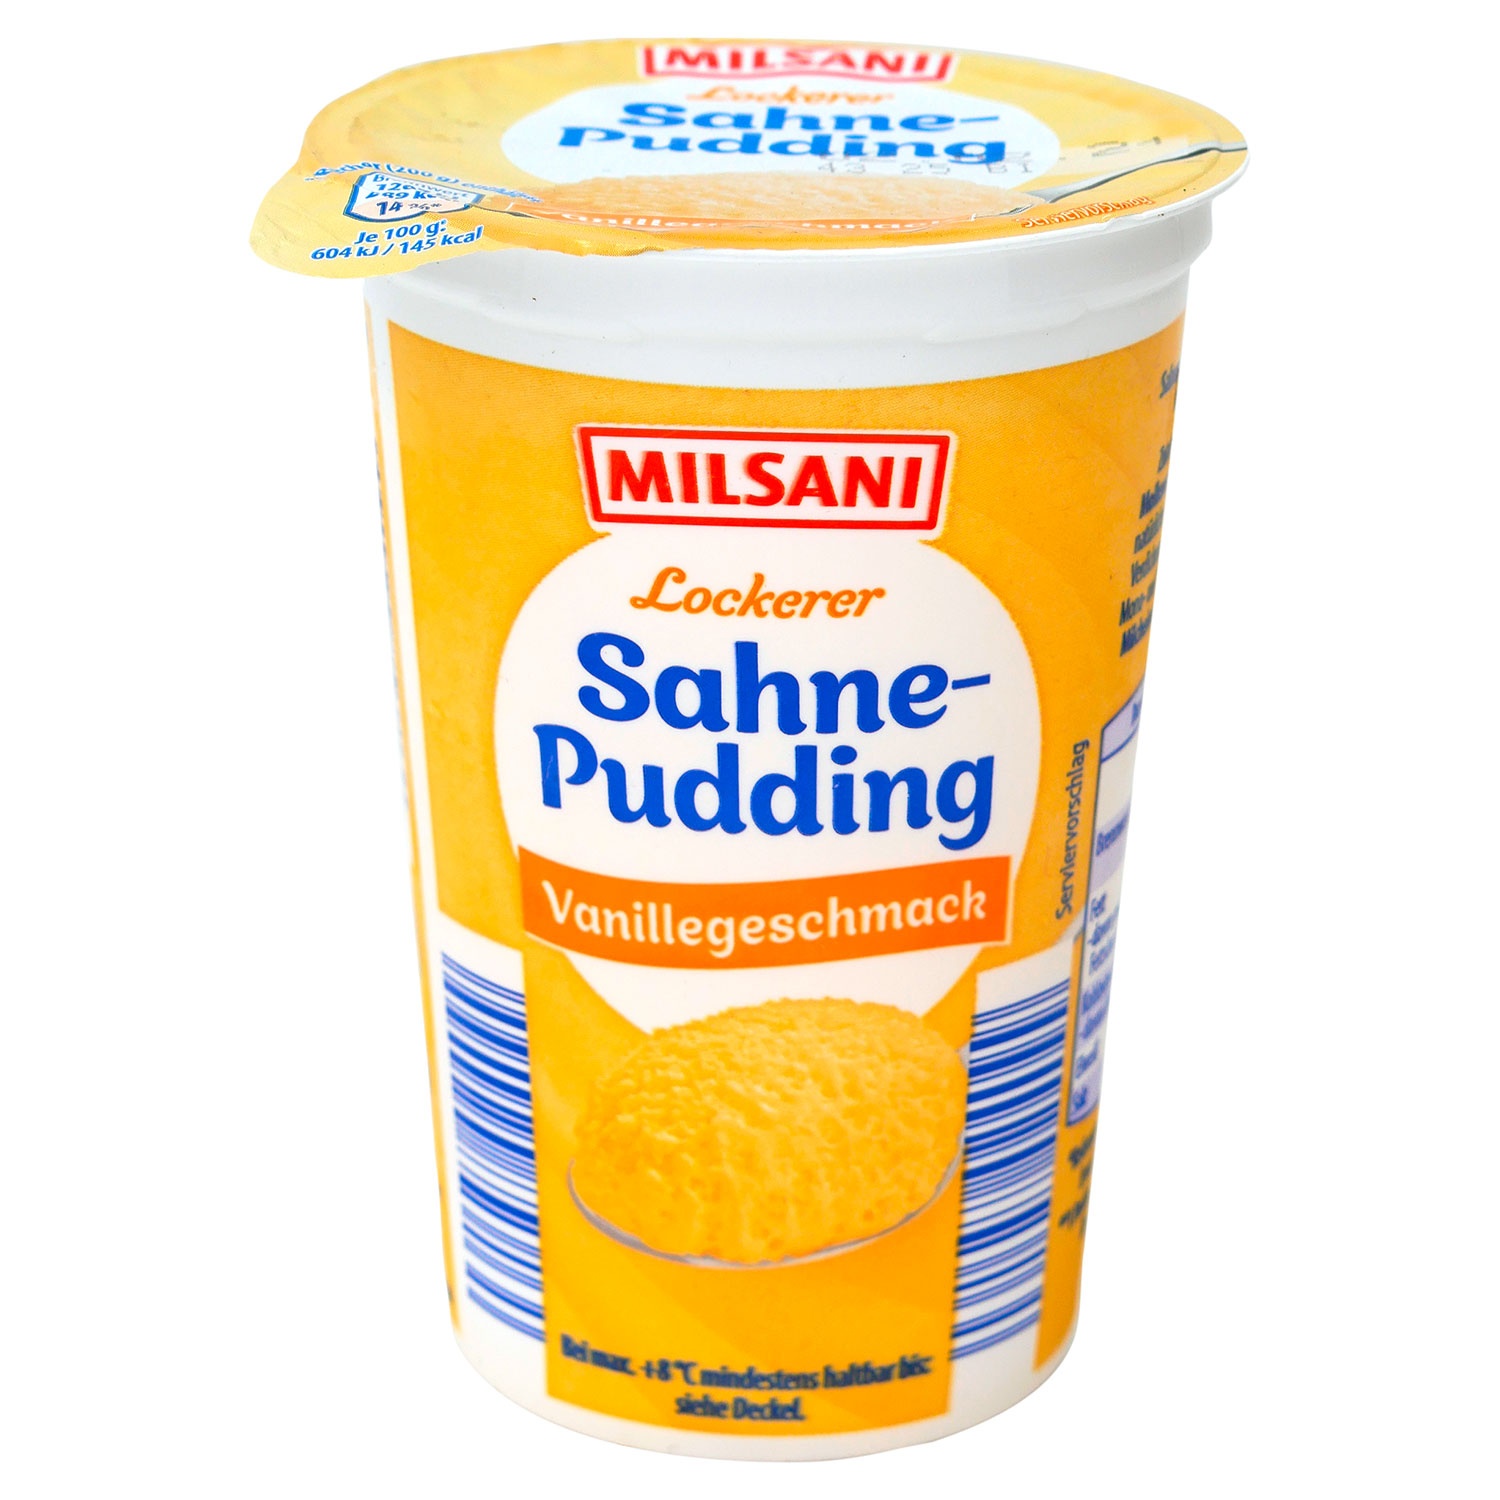 MILSANI Sahne-Pudding 200 g